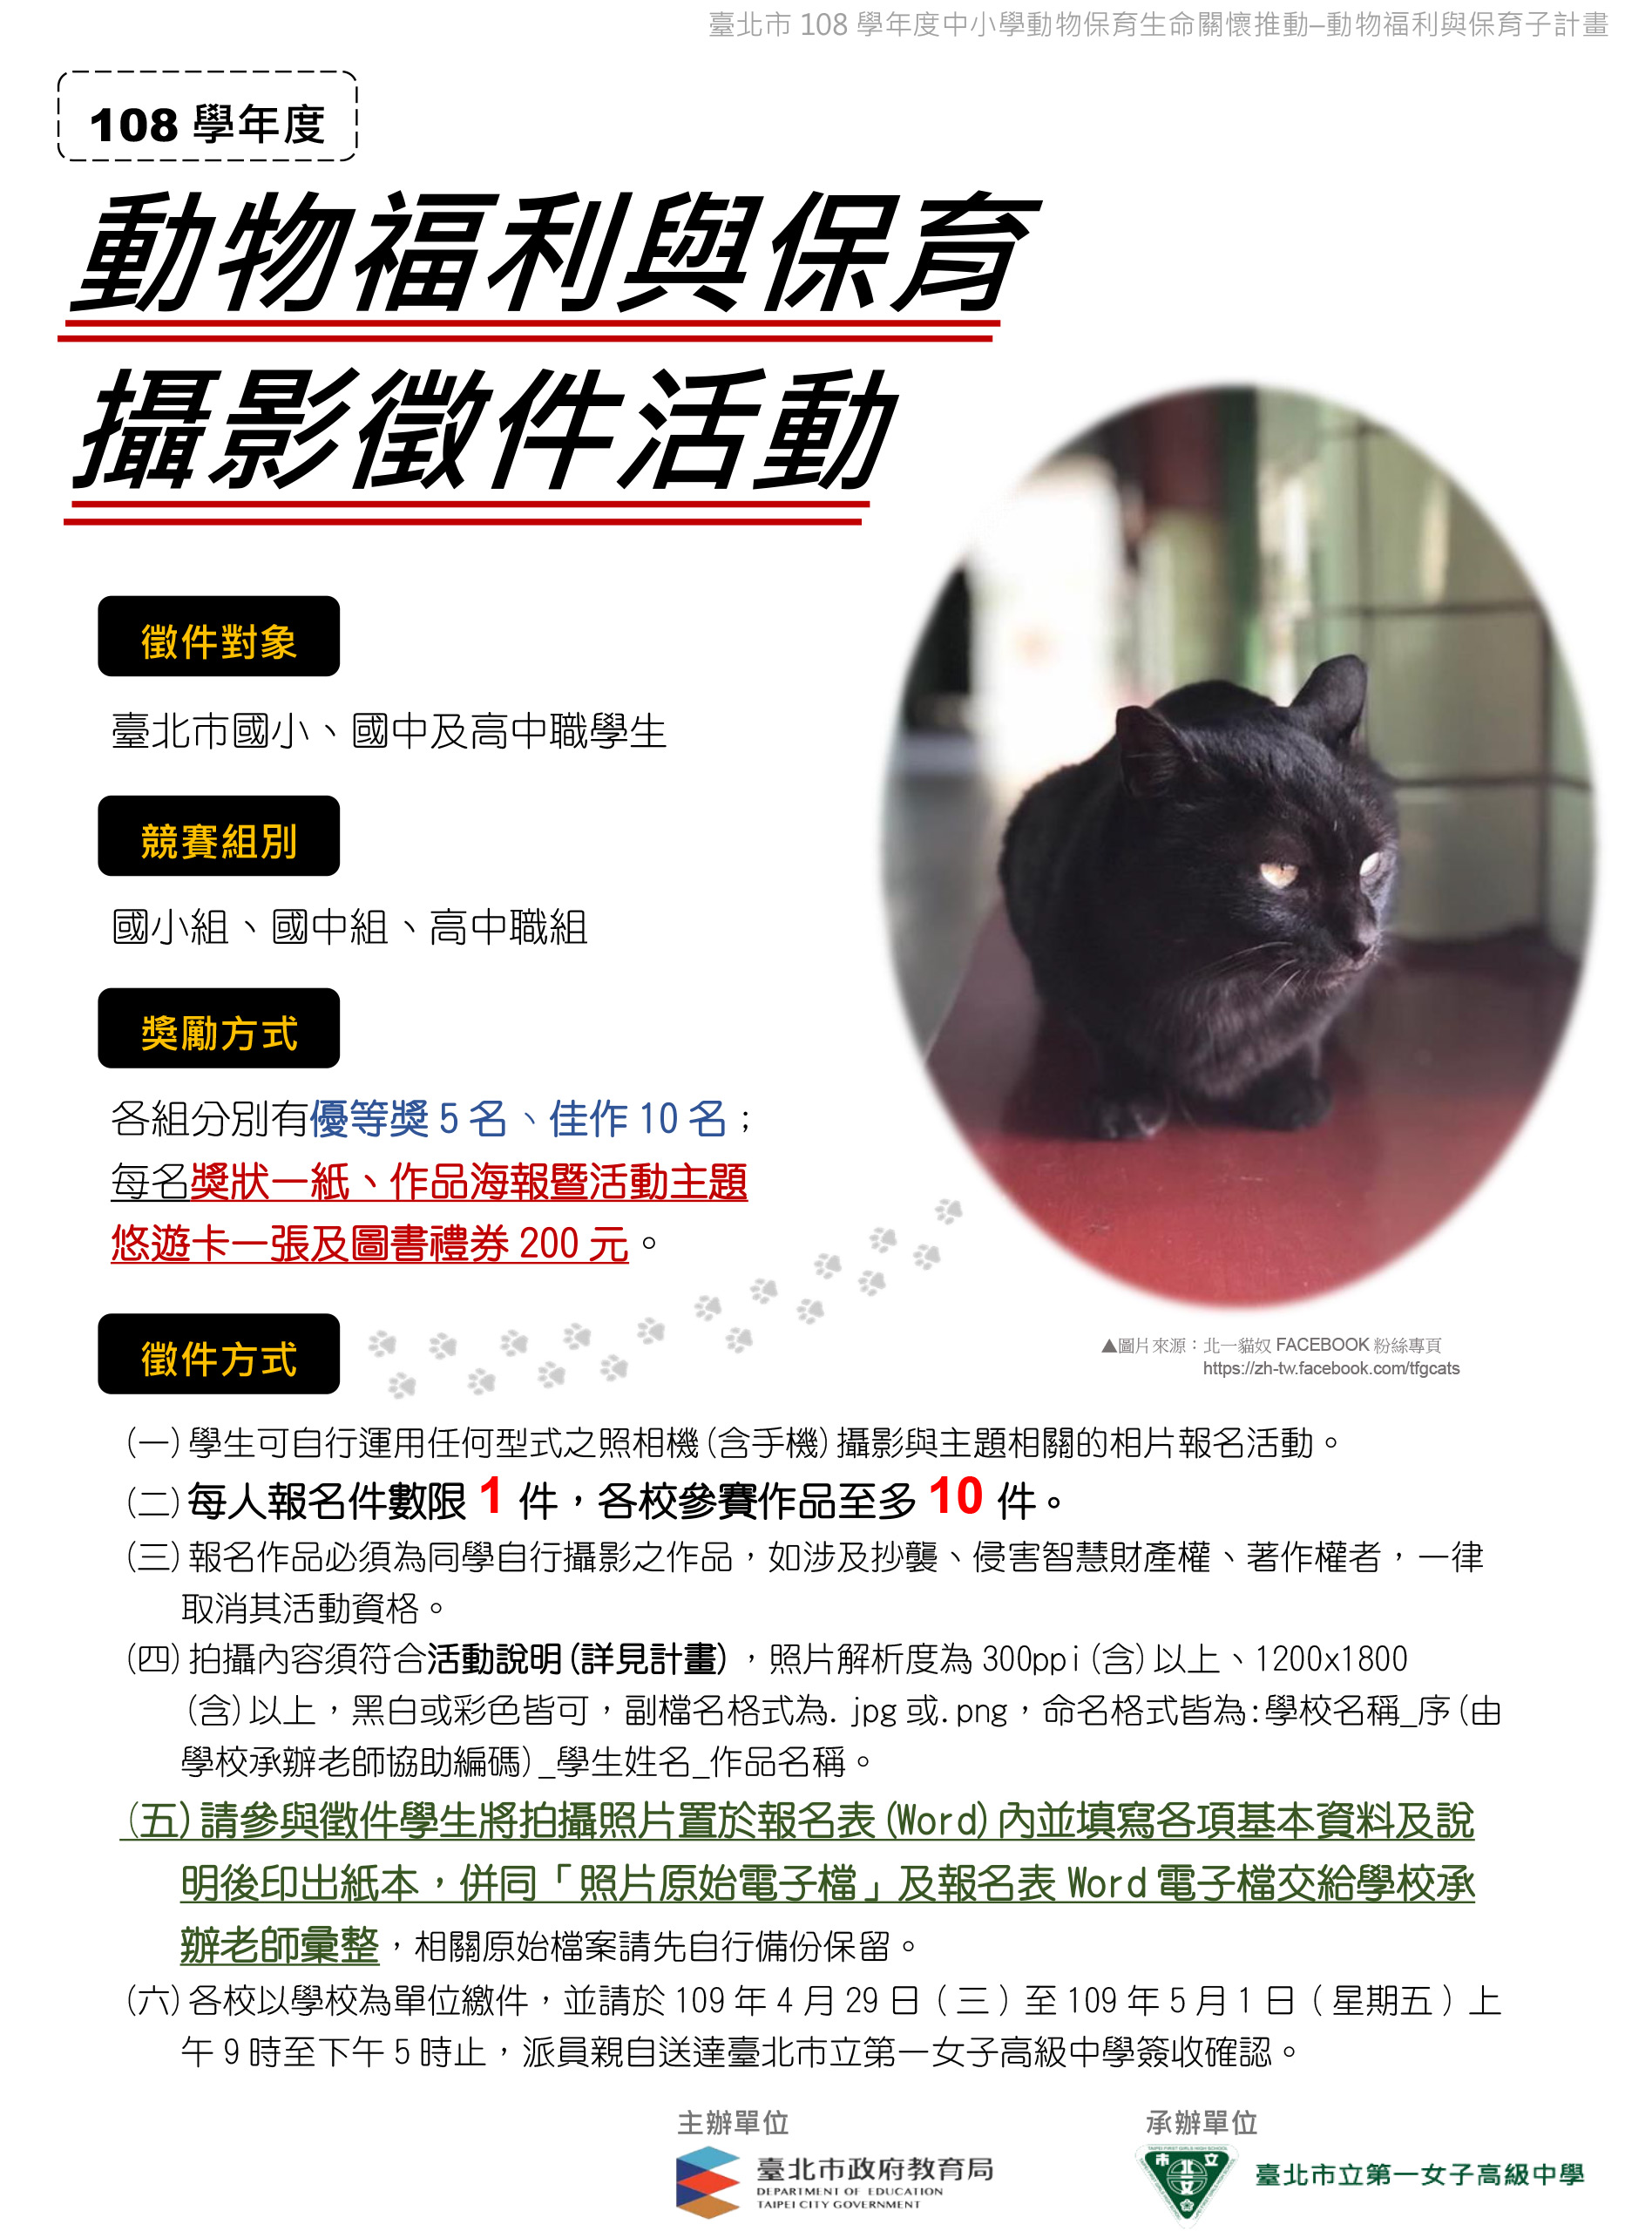 臺北市。108學年度「動物福利及保育」攝影徵件活動 EDM